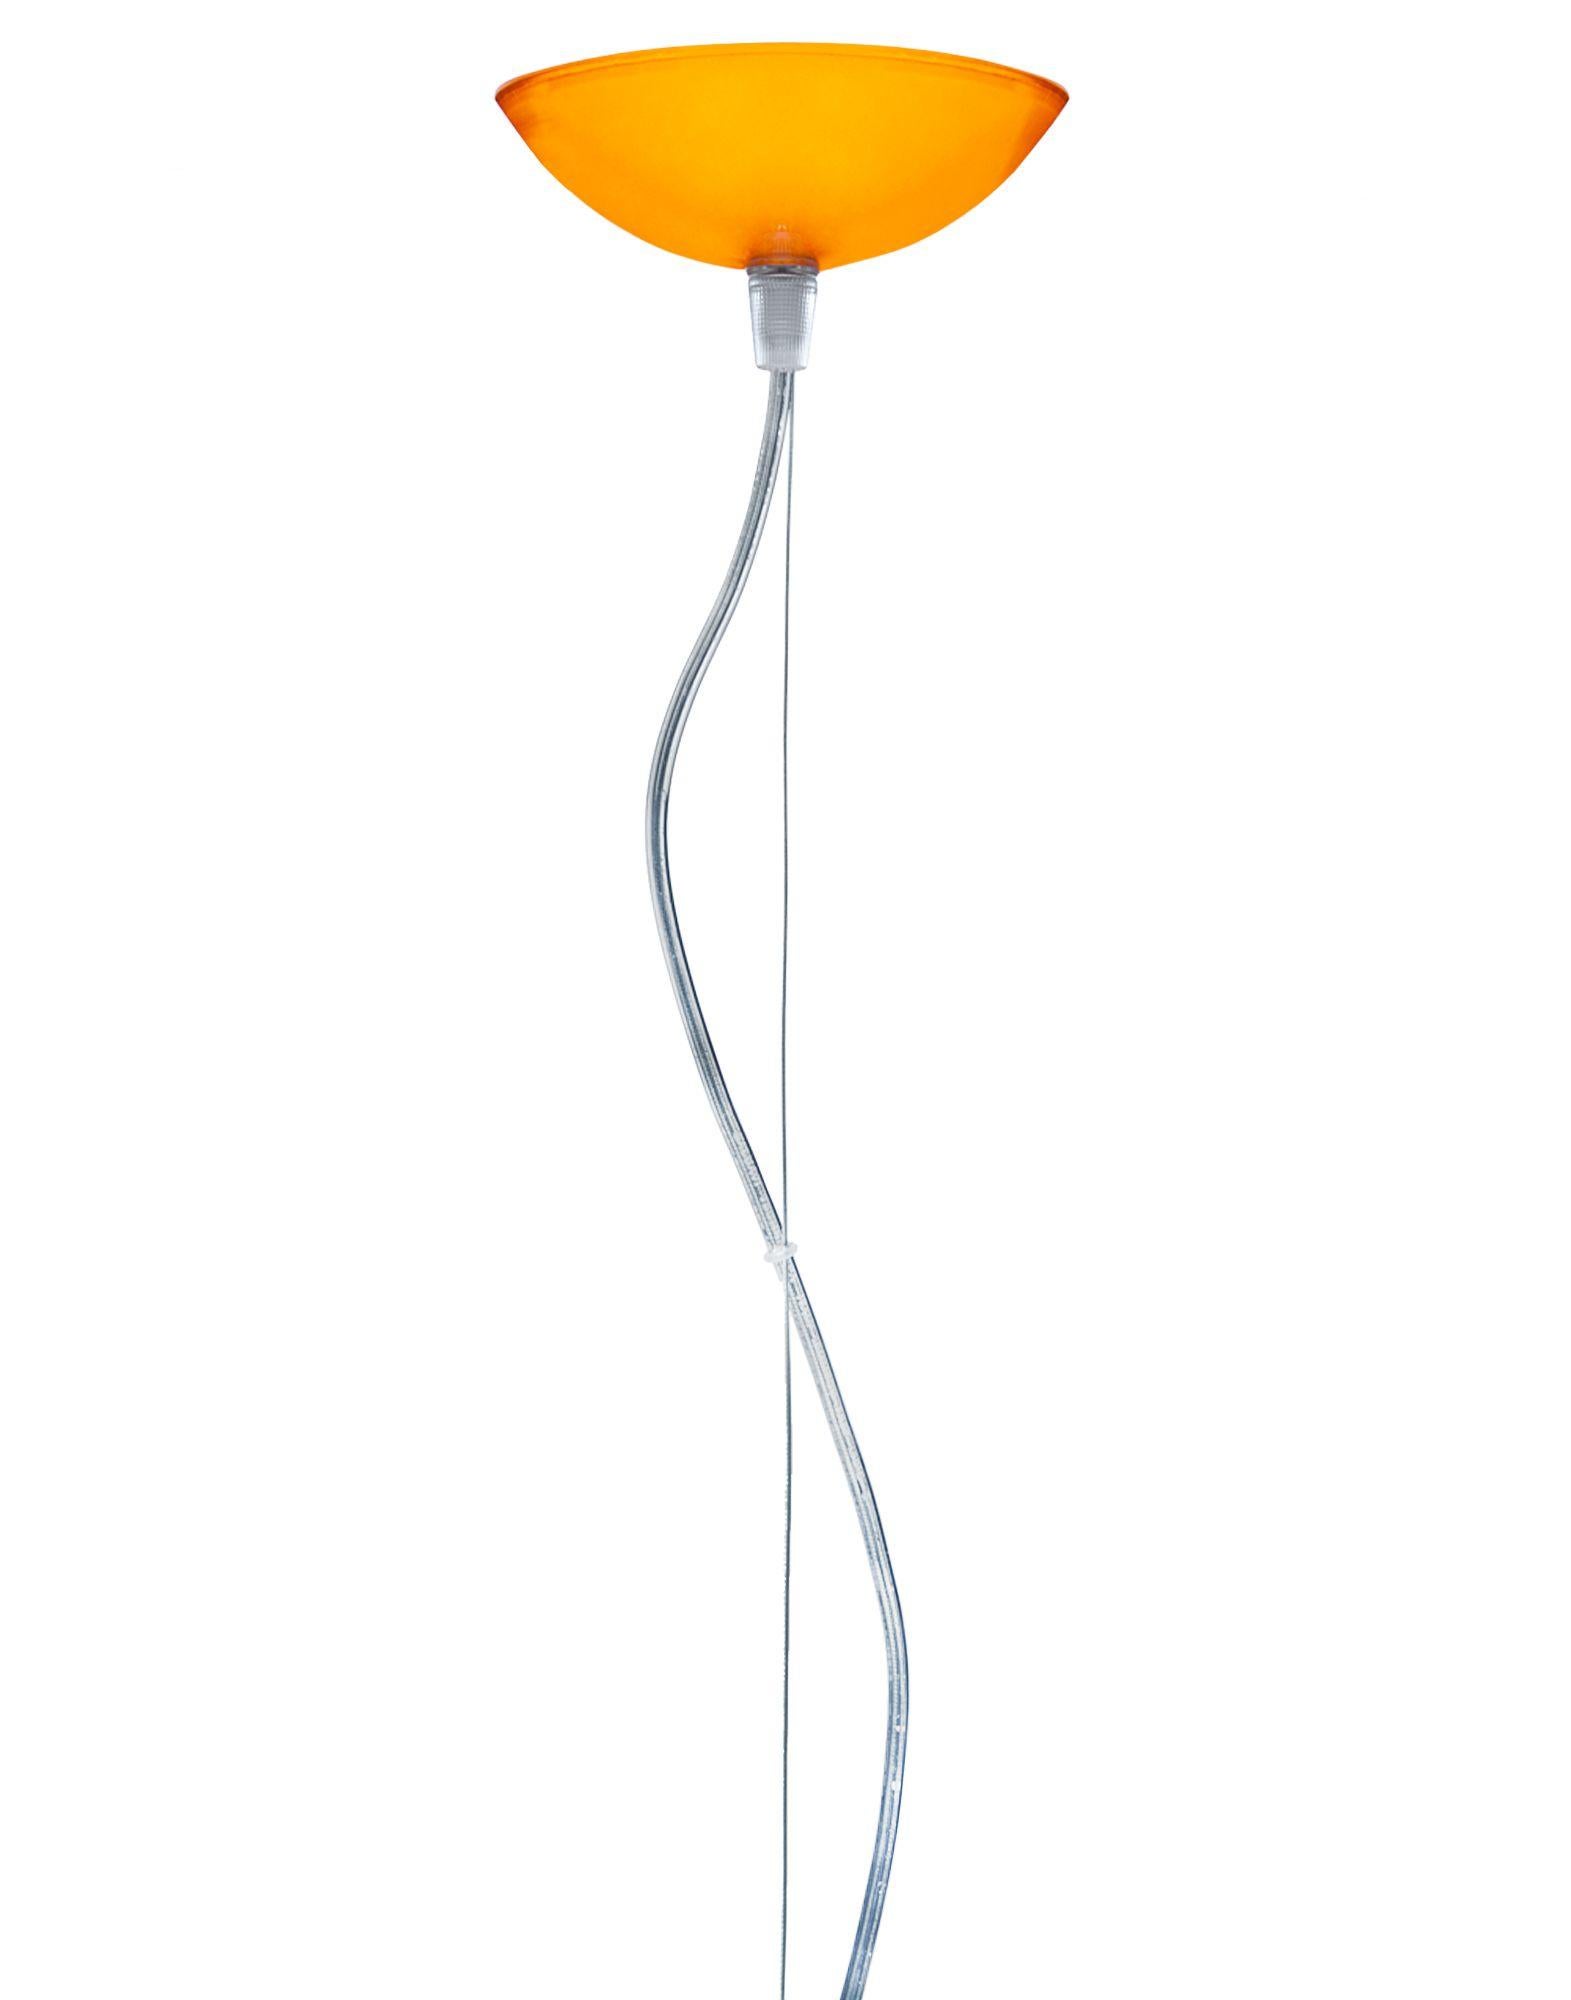 Lampe suspendue FL/Y de petite taille en orange. Il s'agit d'une collection de lampes suspendues conçue par Ferruccio Laviani en 2002.

Dimensions : Hauteur de l'abat-jour : 11 po ; Diamètre : 15 po ; Poids unitaire : 1,08 kg. Fabriqué en : PMMA.